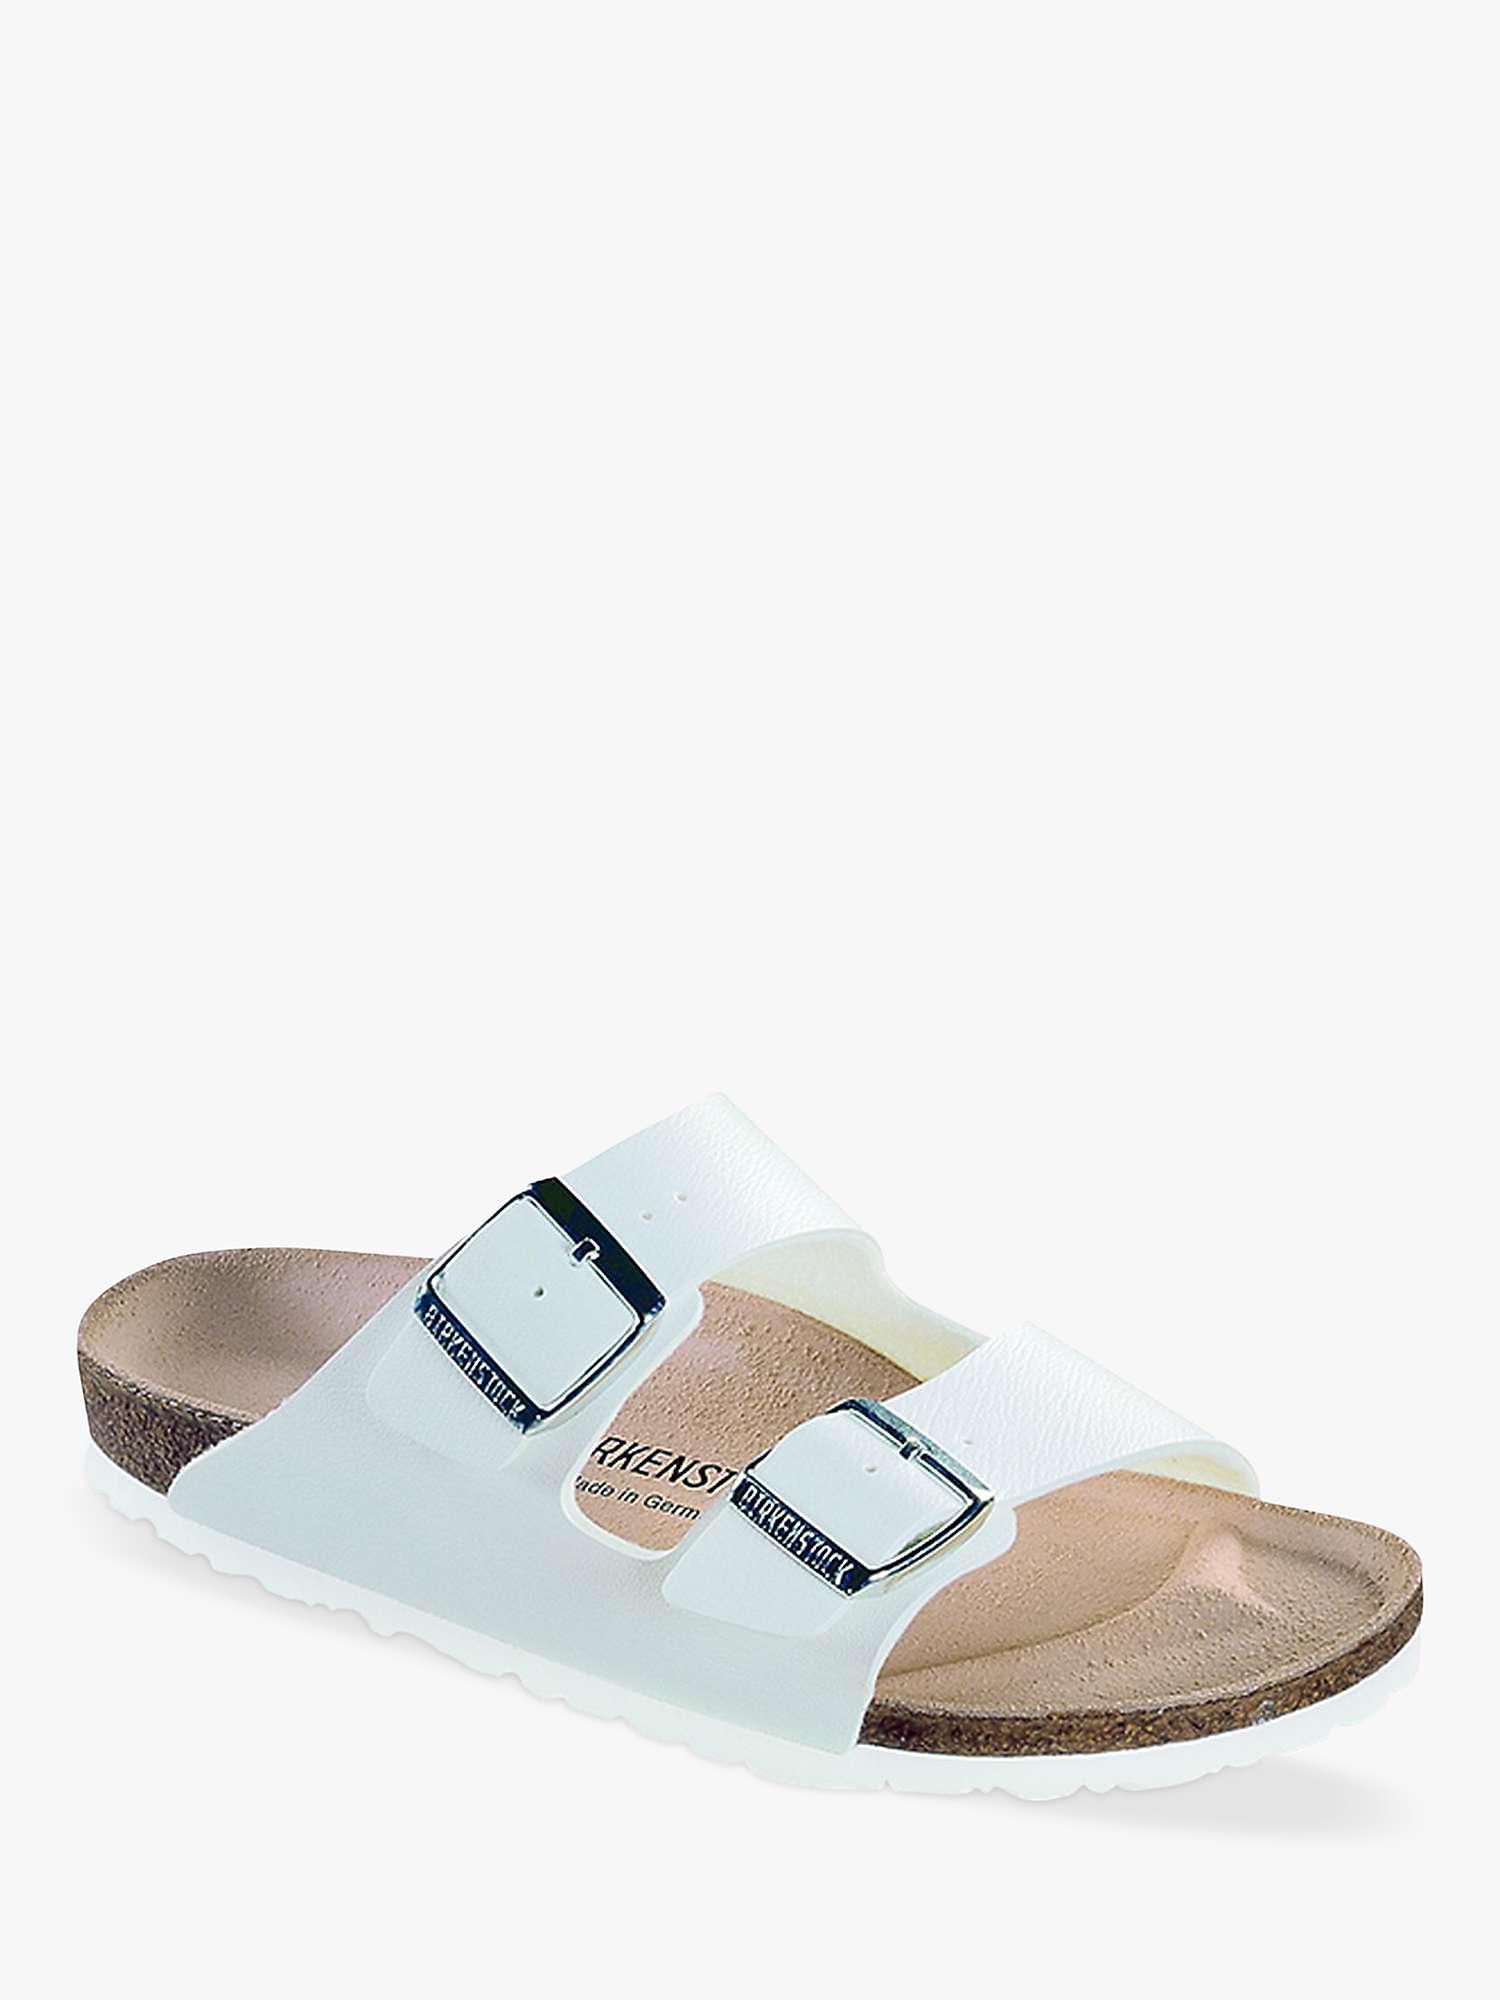 Buy Birkenstock Arizona Narrow Fit Birko Flor Double Strap Sandals Online at johnlewis.com